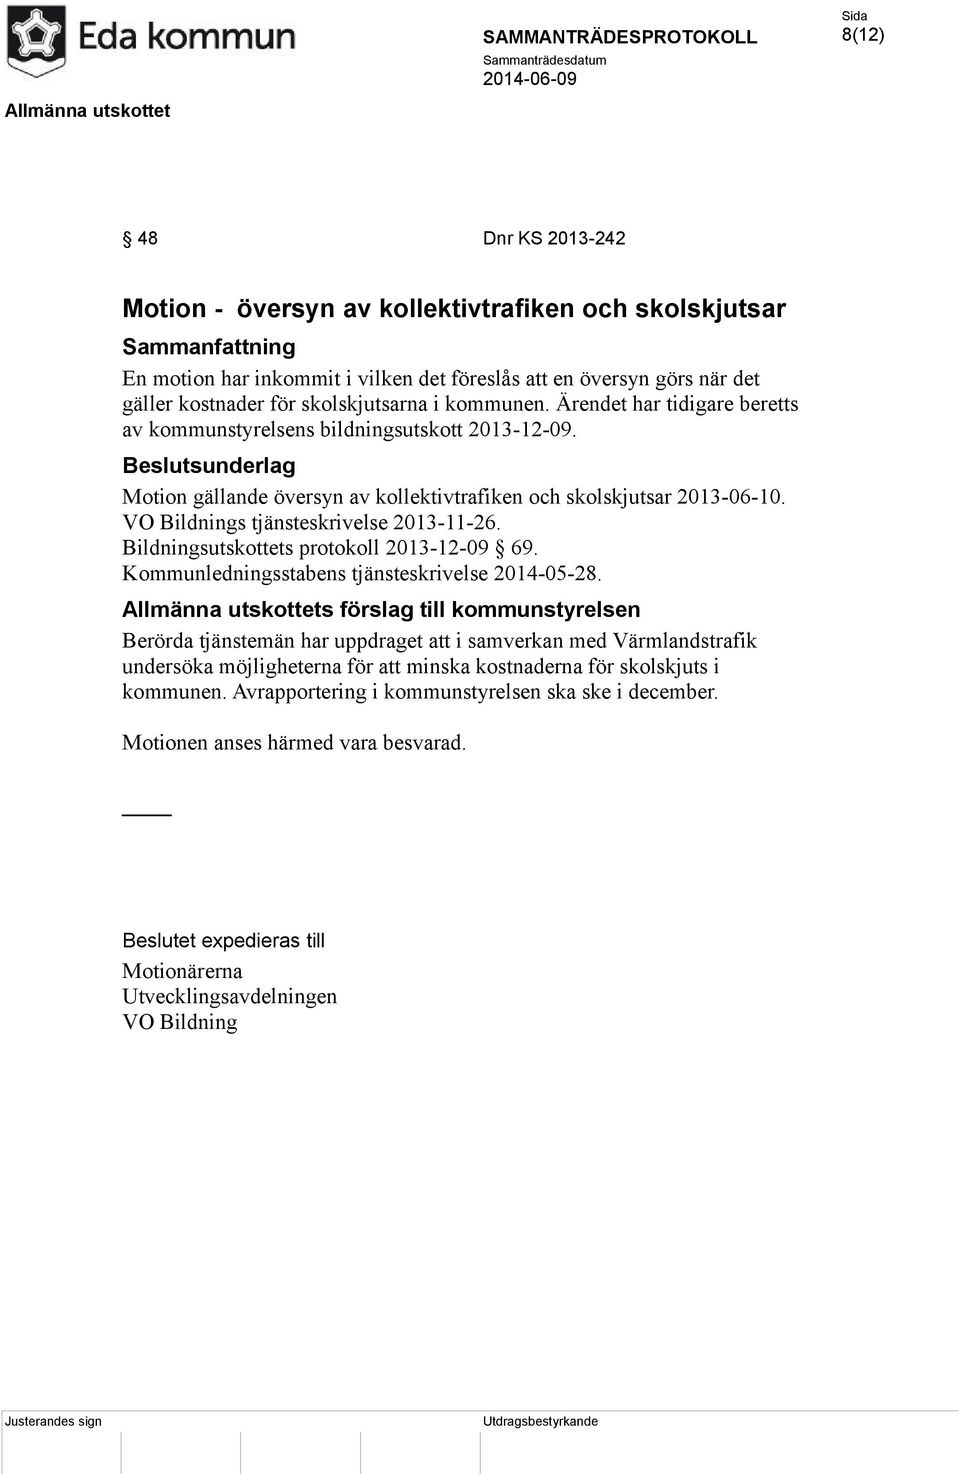 Bildningsutskottets protokoll 2013-12-09 69. Kommunledningsstabens tjänsteskrivelse 2014-05-28.